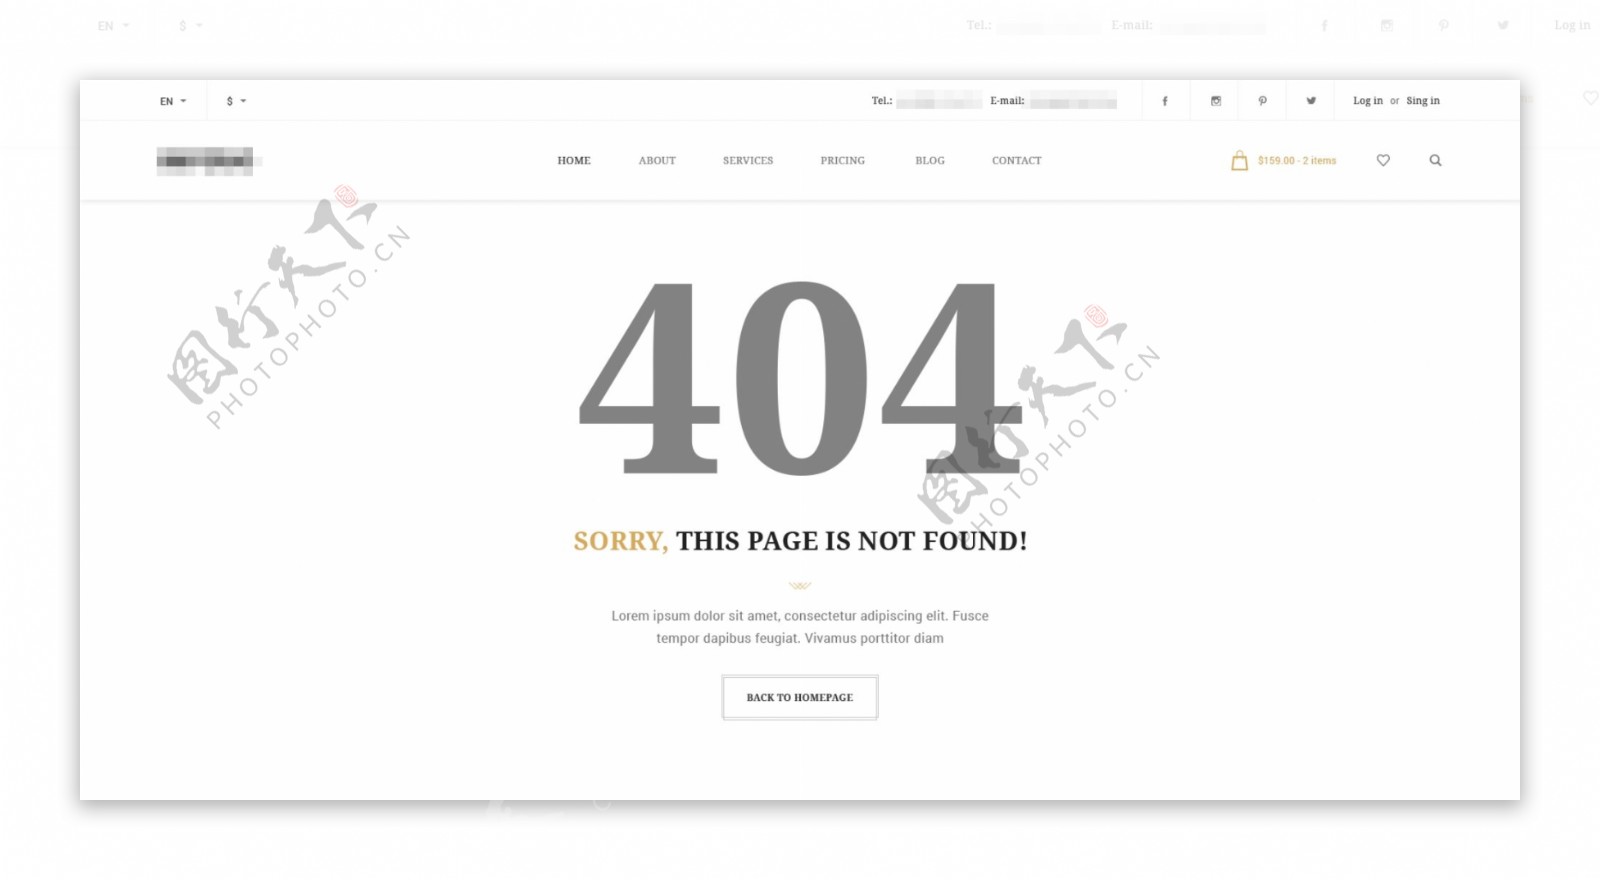 白色的电商商城购物网站之404错误界面